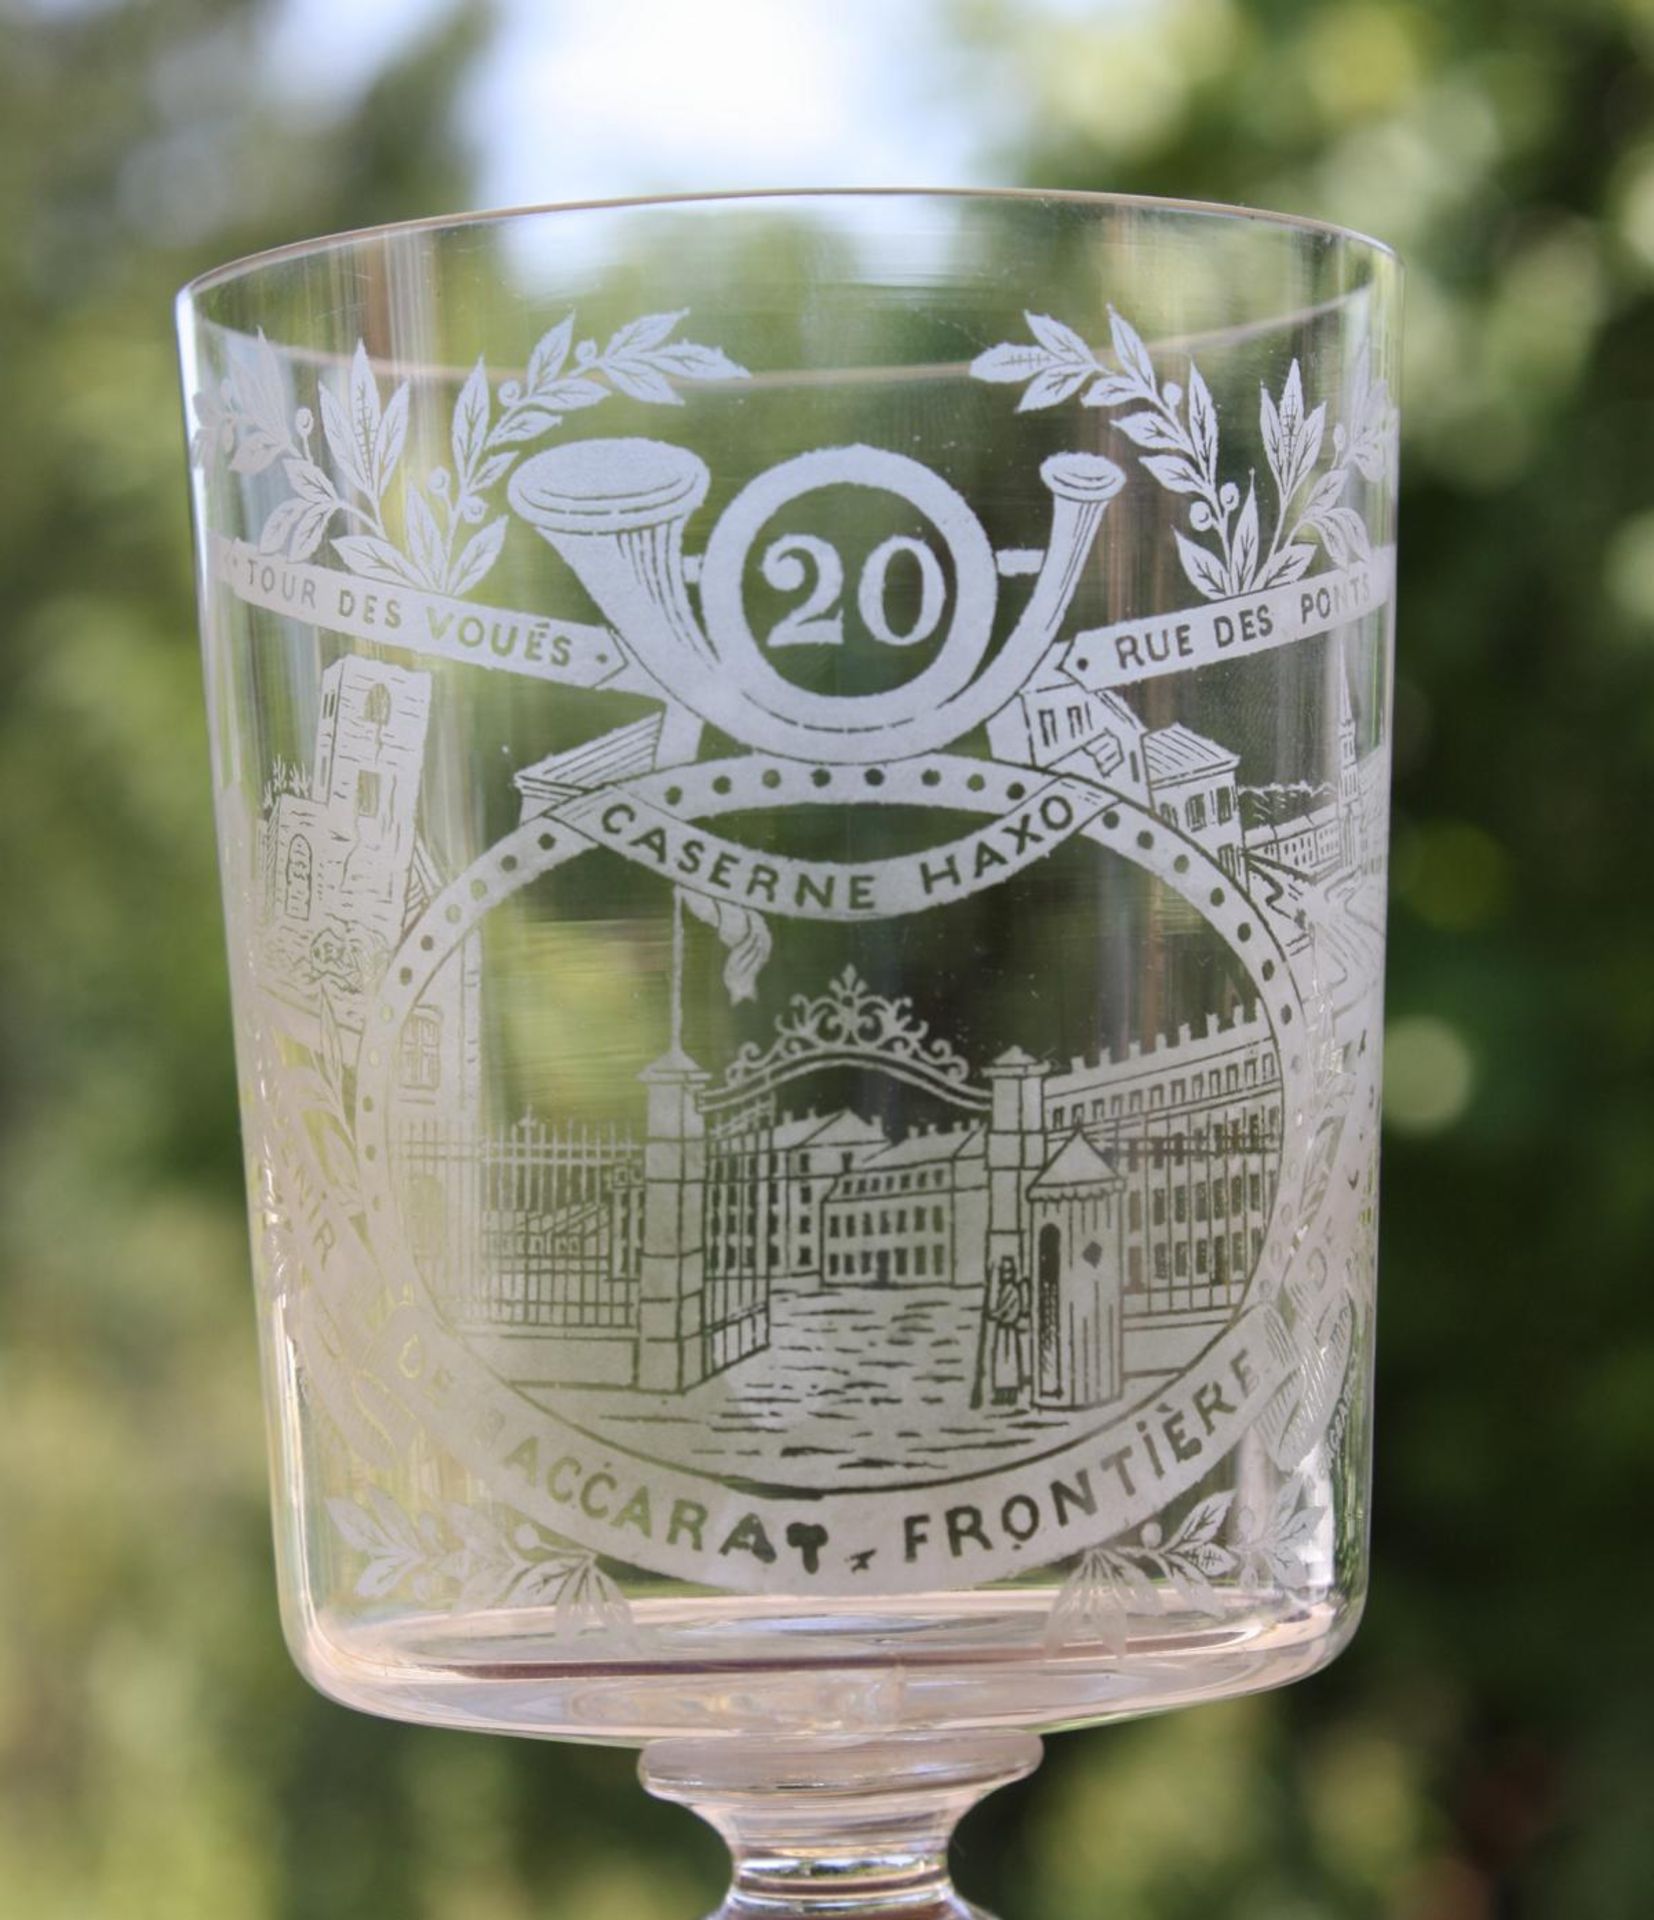 Baccarat Souvenir Glas, 1920Farbloses Glas mit geätztem Dekor, bezeichnet: 'Tour de Voués, Rue de - Image 2 of 3